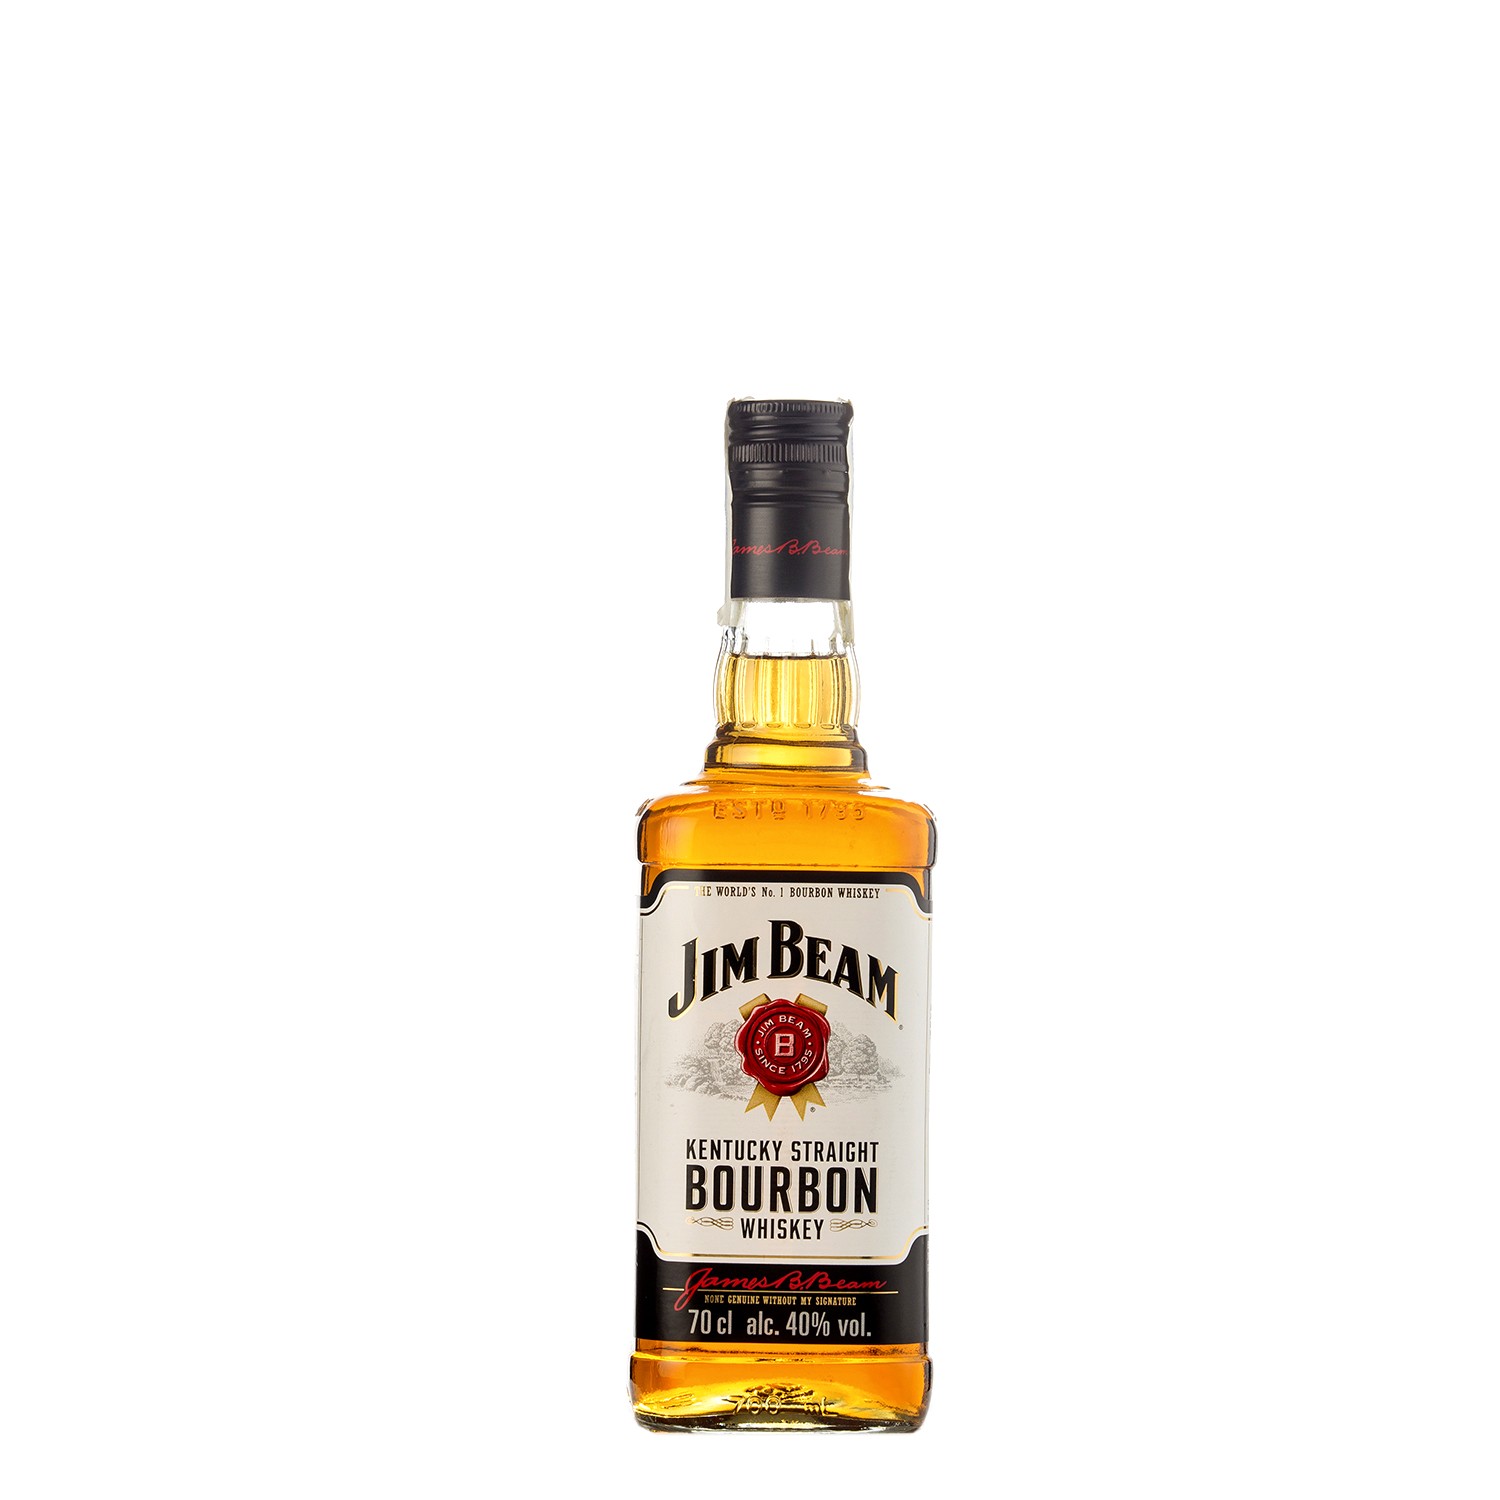 Jim Beam 70cl Bourbon Whiskey Kentucky